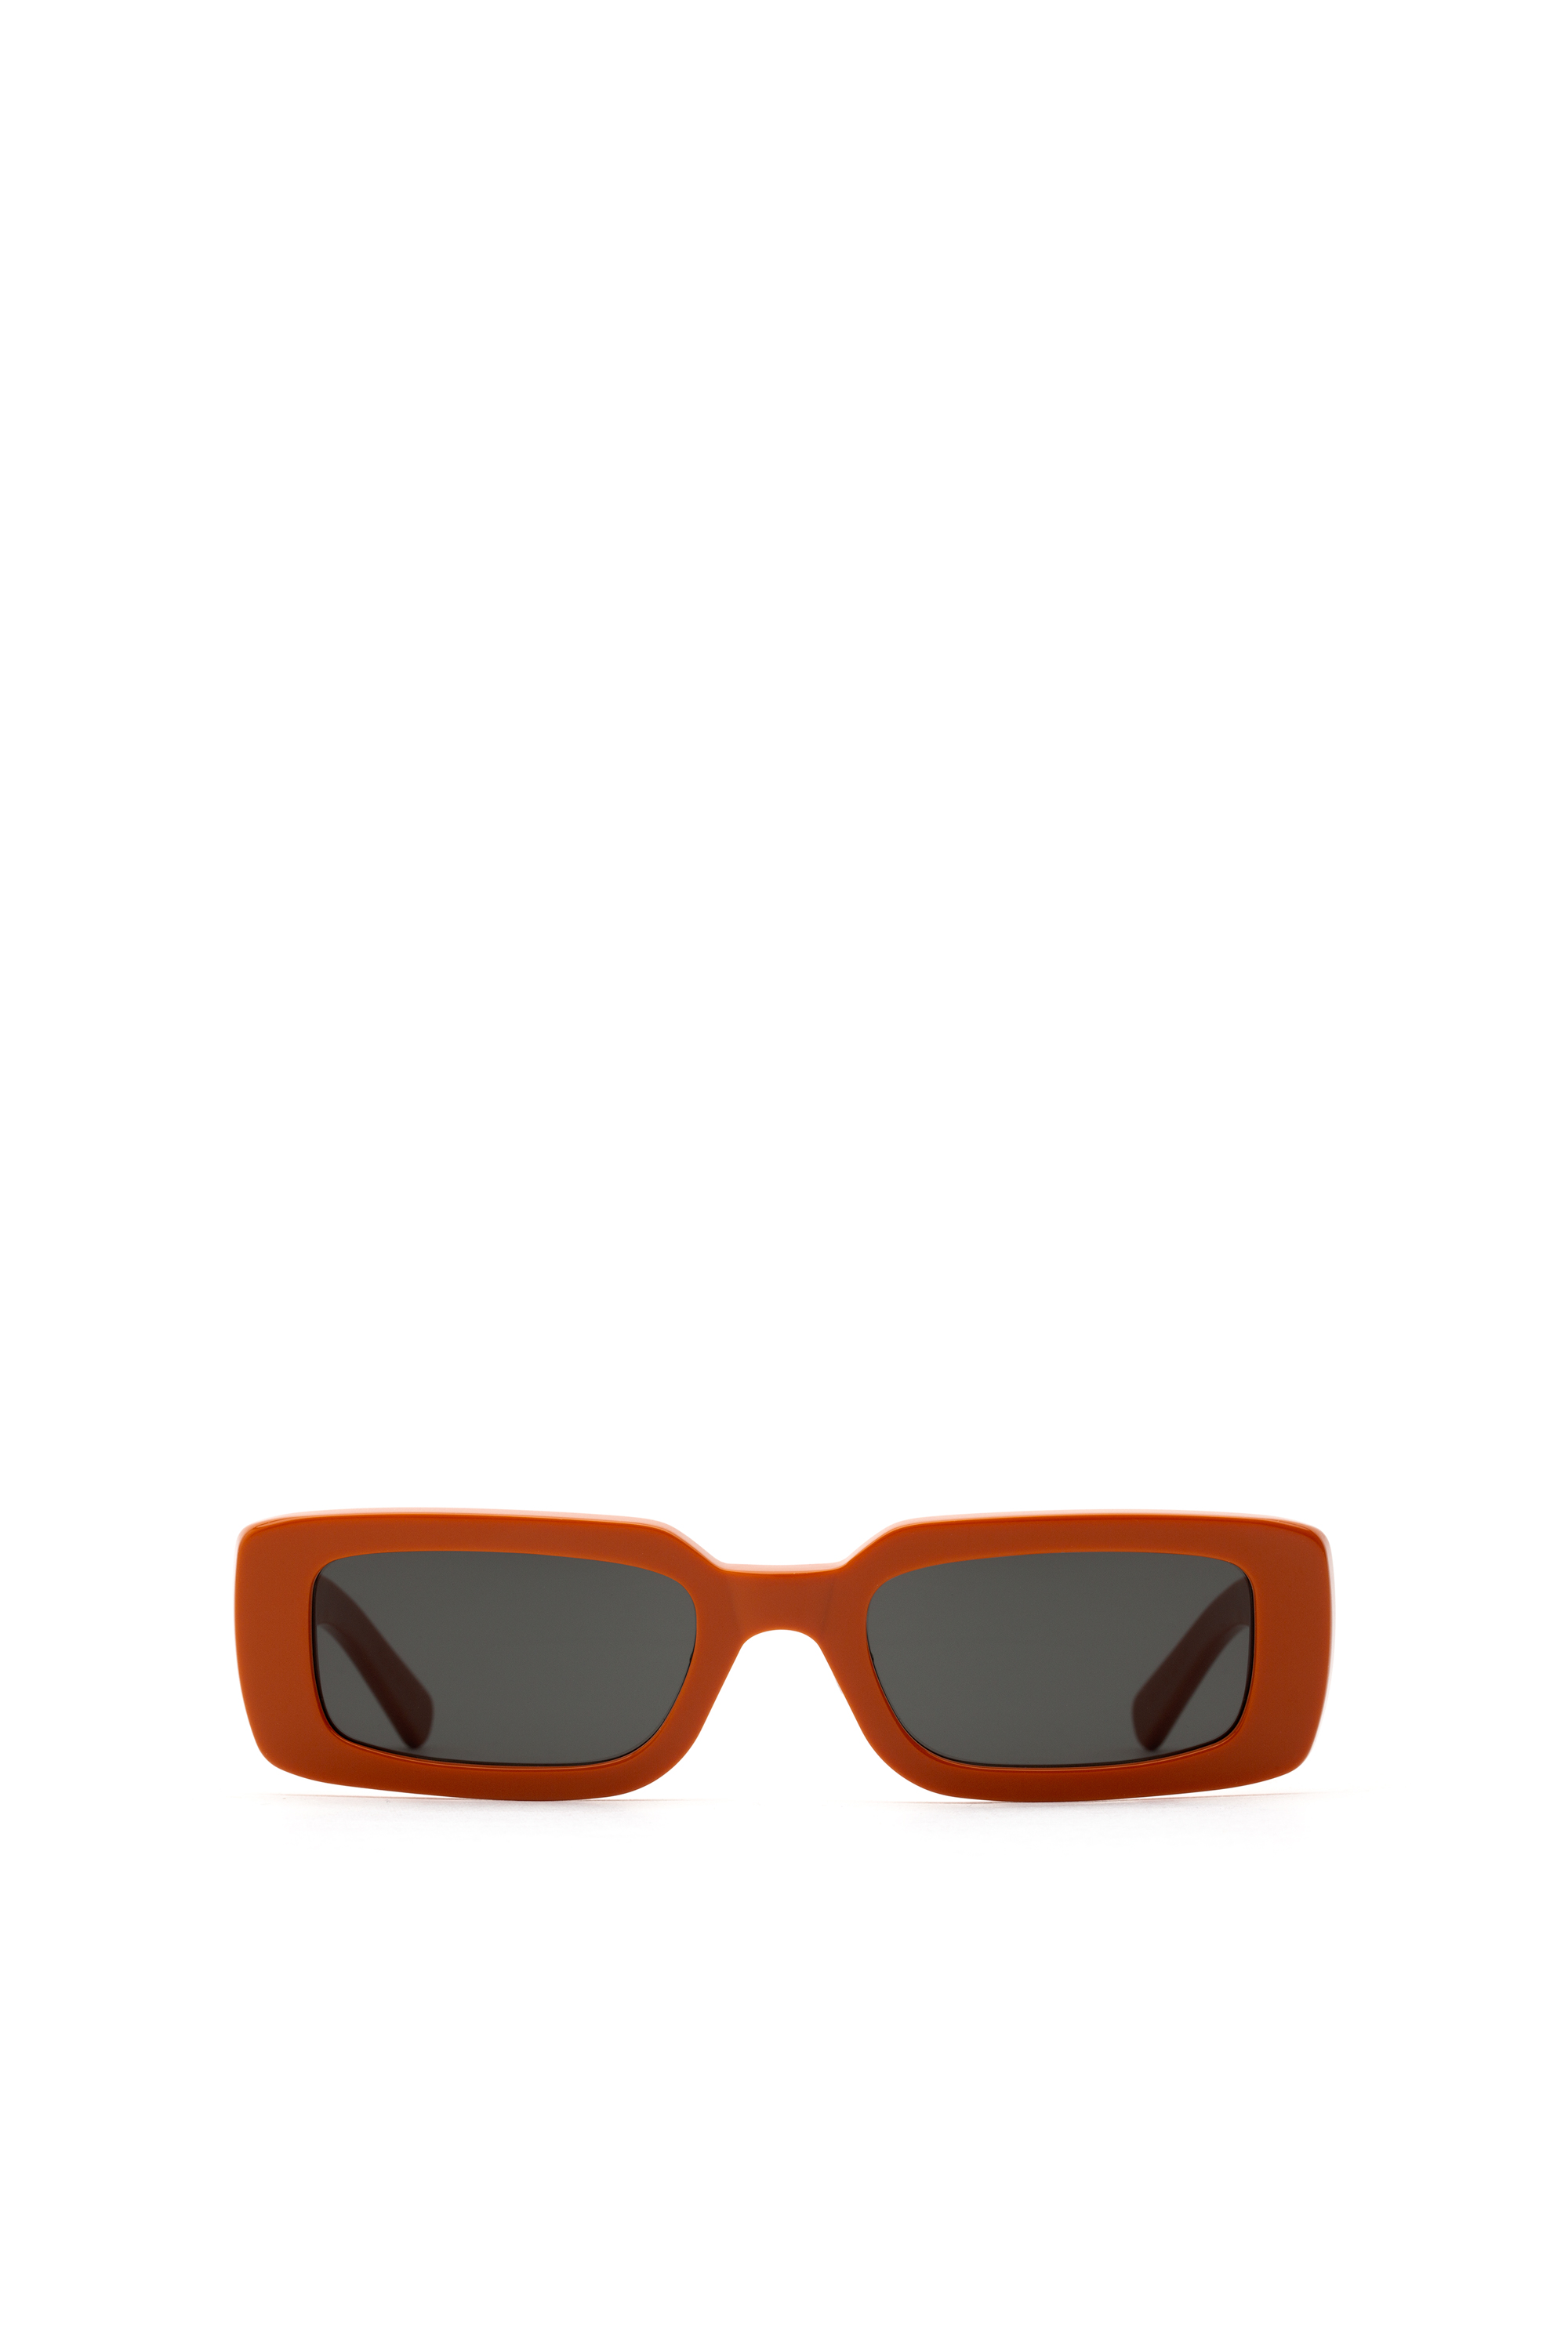 Diesel leesbril van 0,25 tot Accessoires Zonnebrillen & Eyewear Leesbrillen 3,50 Ark blauw/ zwart mens dl5237 092 